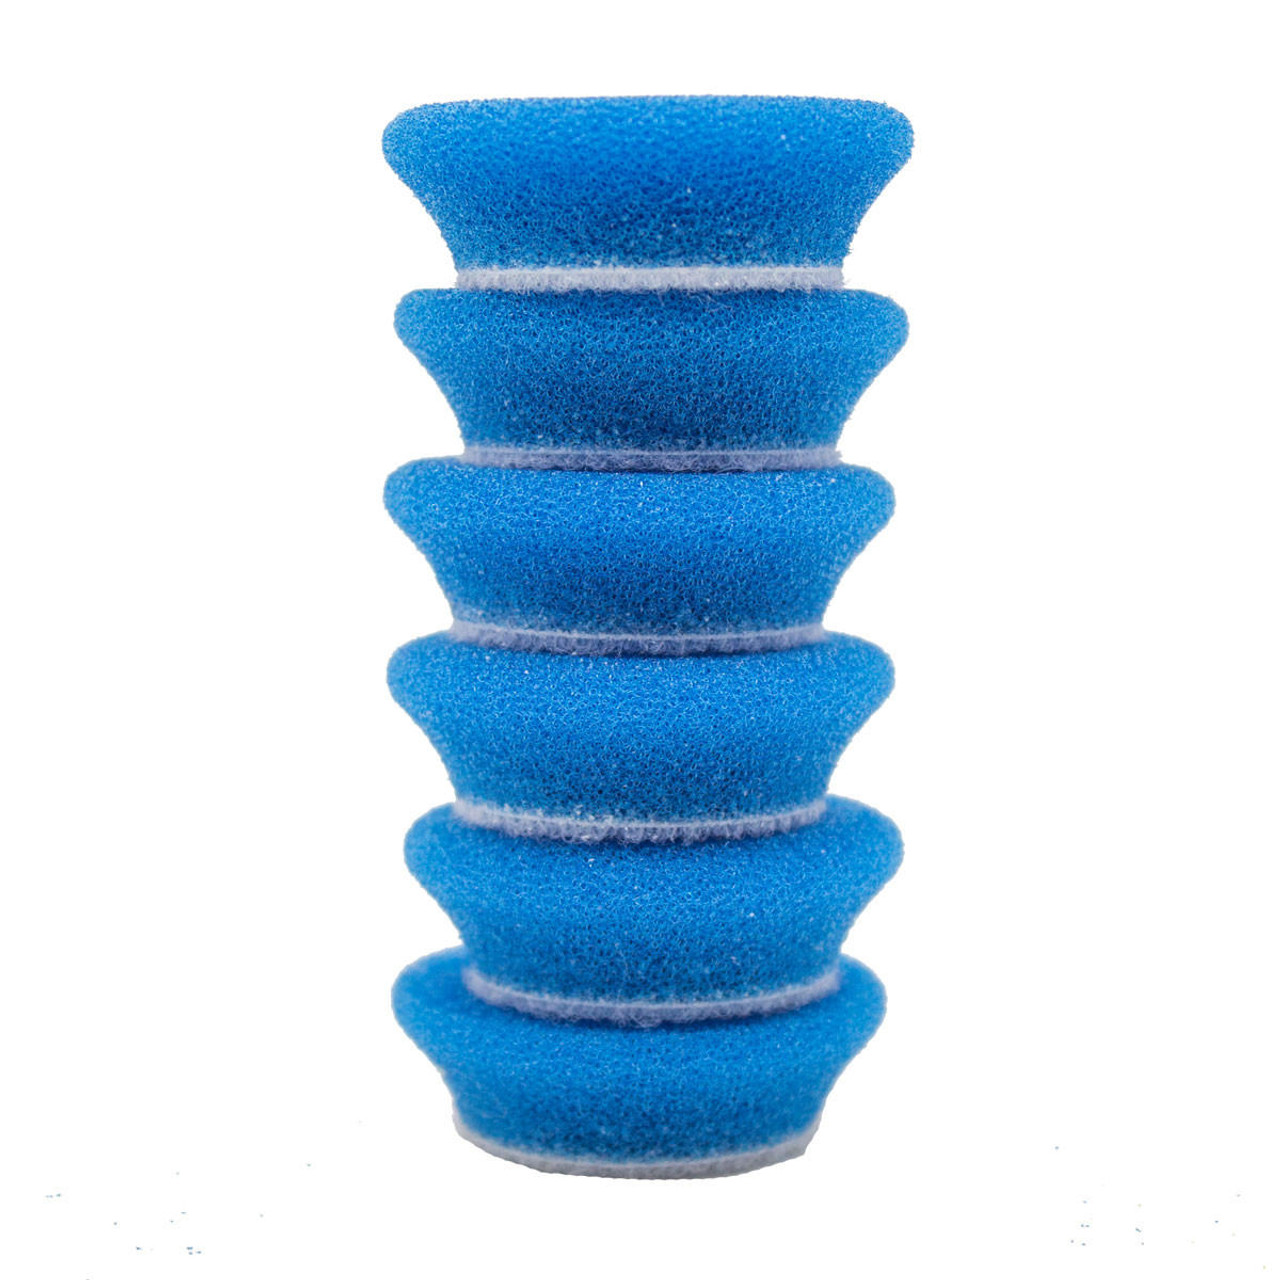 RUPES DA Blue Coarse Foam Pad - 1.5 Inch